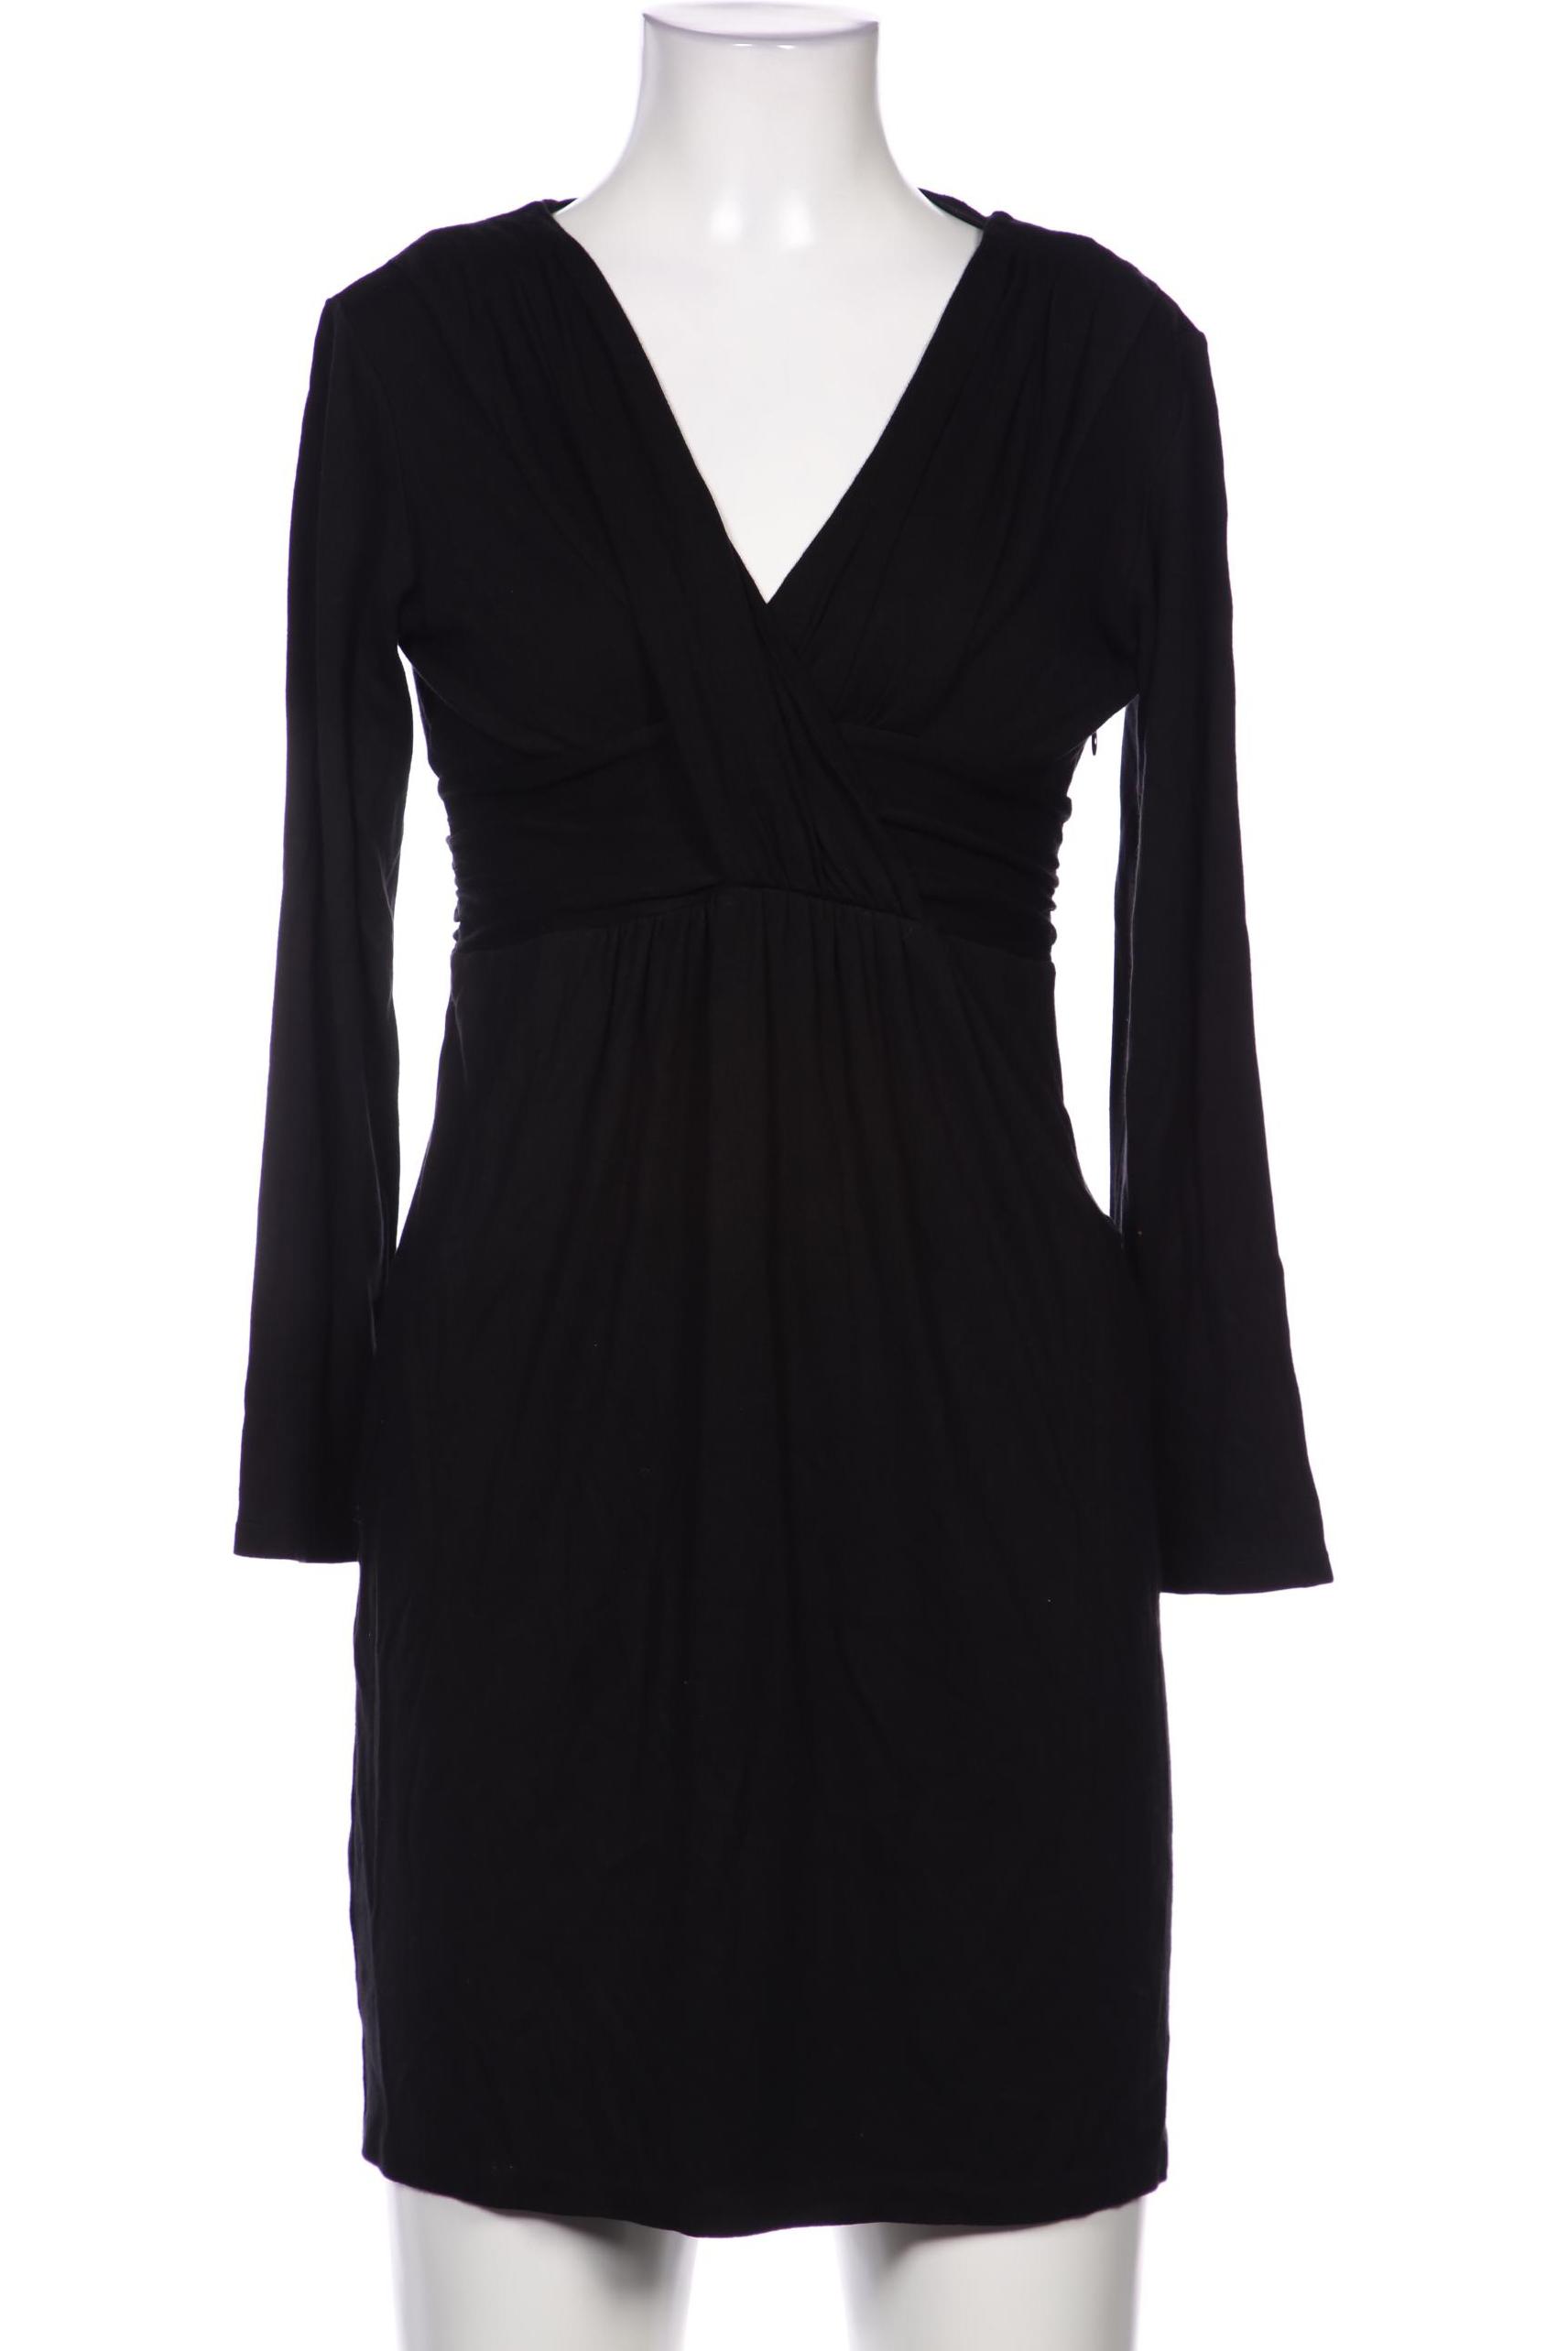 Strenesse Damen Kleid, schwarz, Gr. 34 von Strenesse